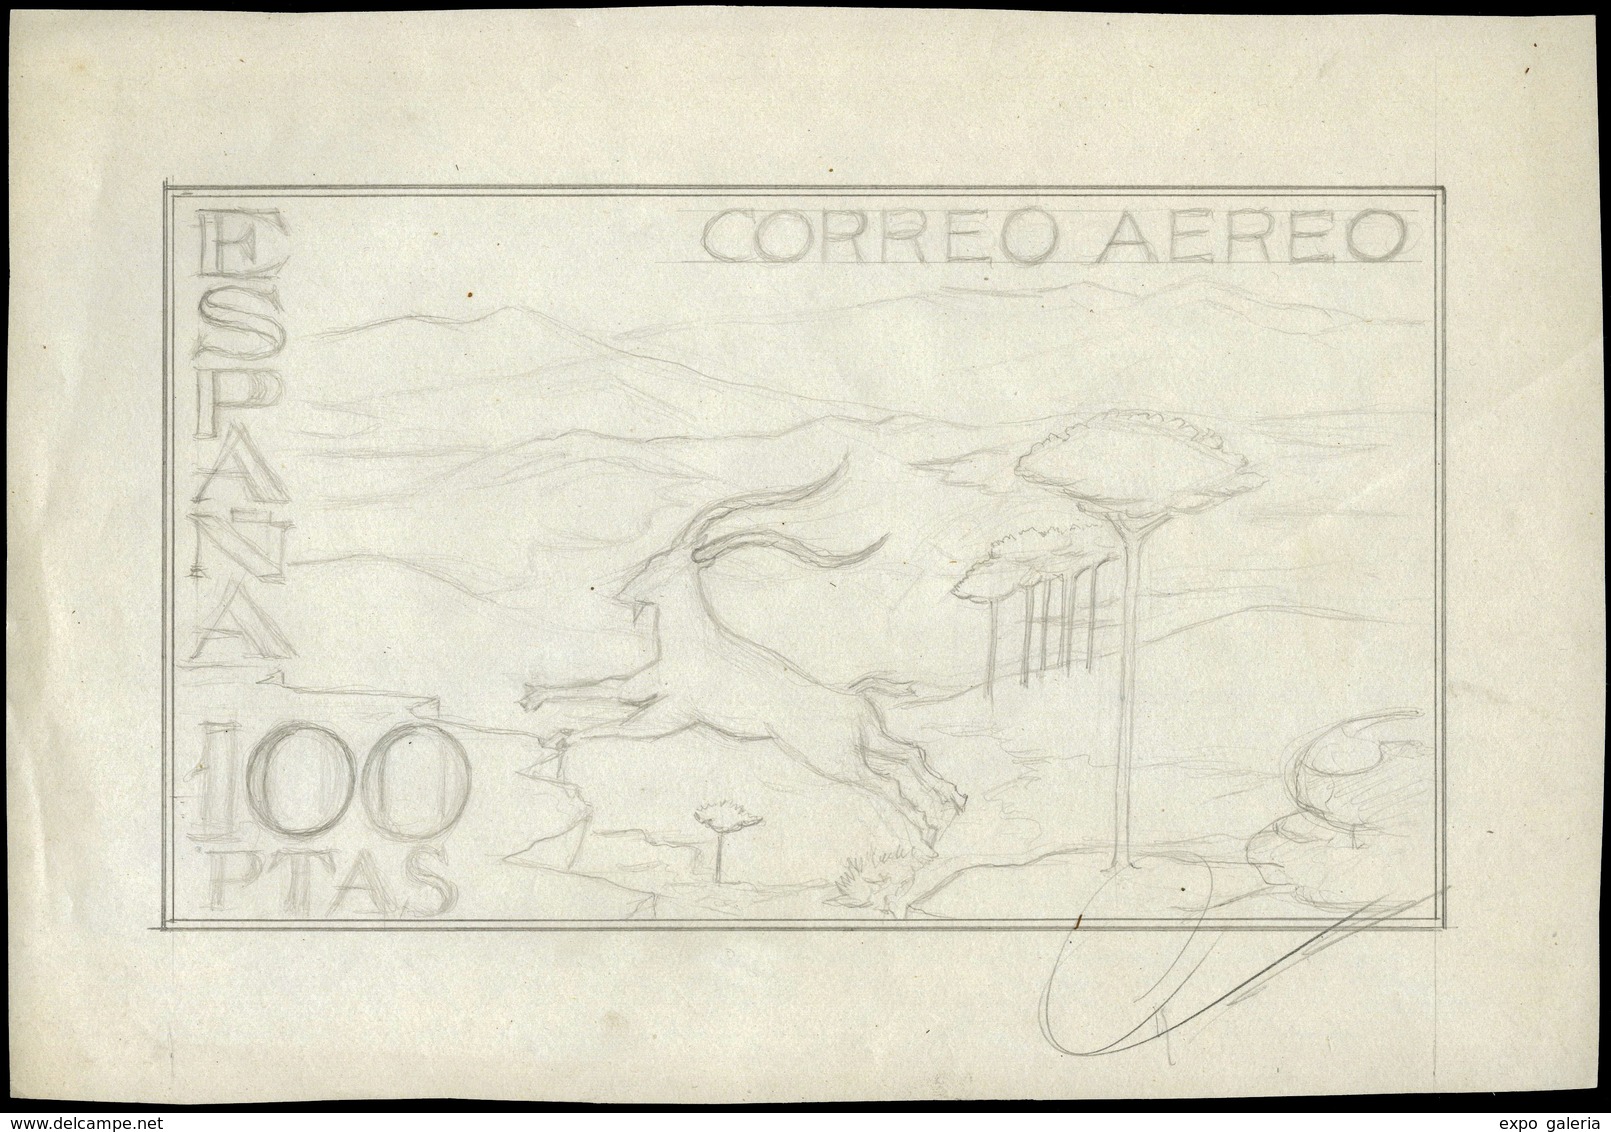 Año 1960 - Boceto Original De Proyecto No Adoptado Sello Correo Aereo 100 Ptas.Firma Sánchez Toda - Covers & Documents